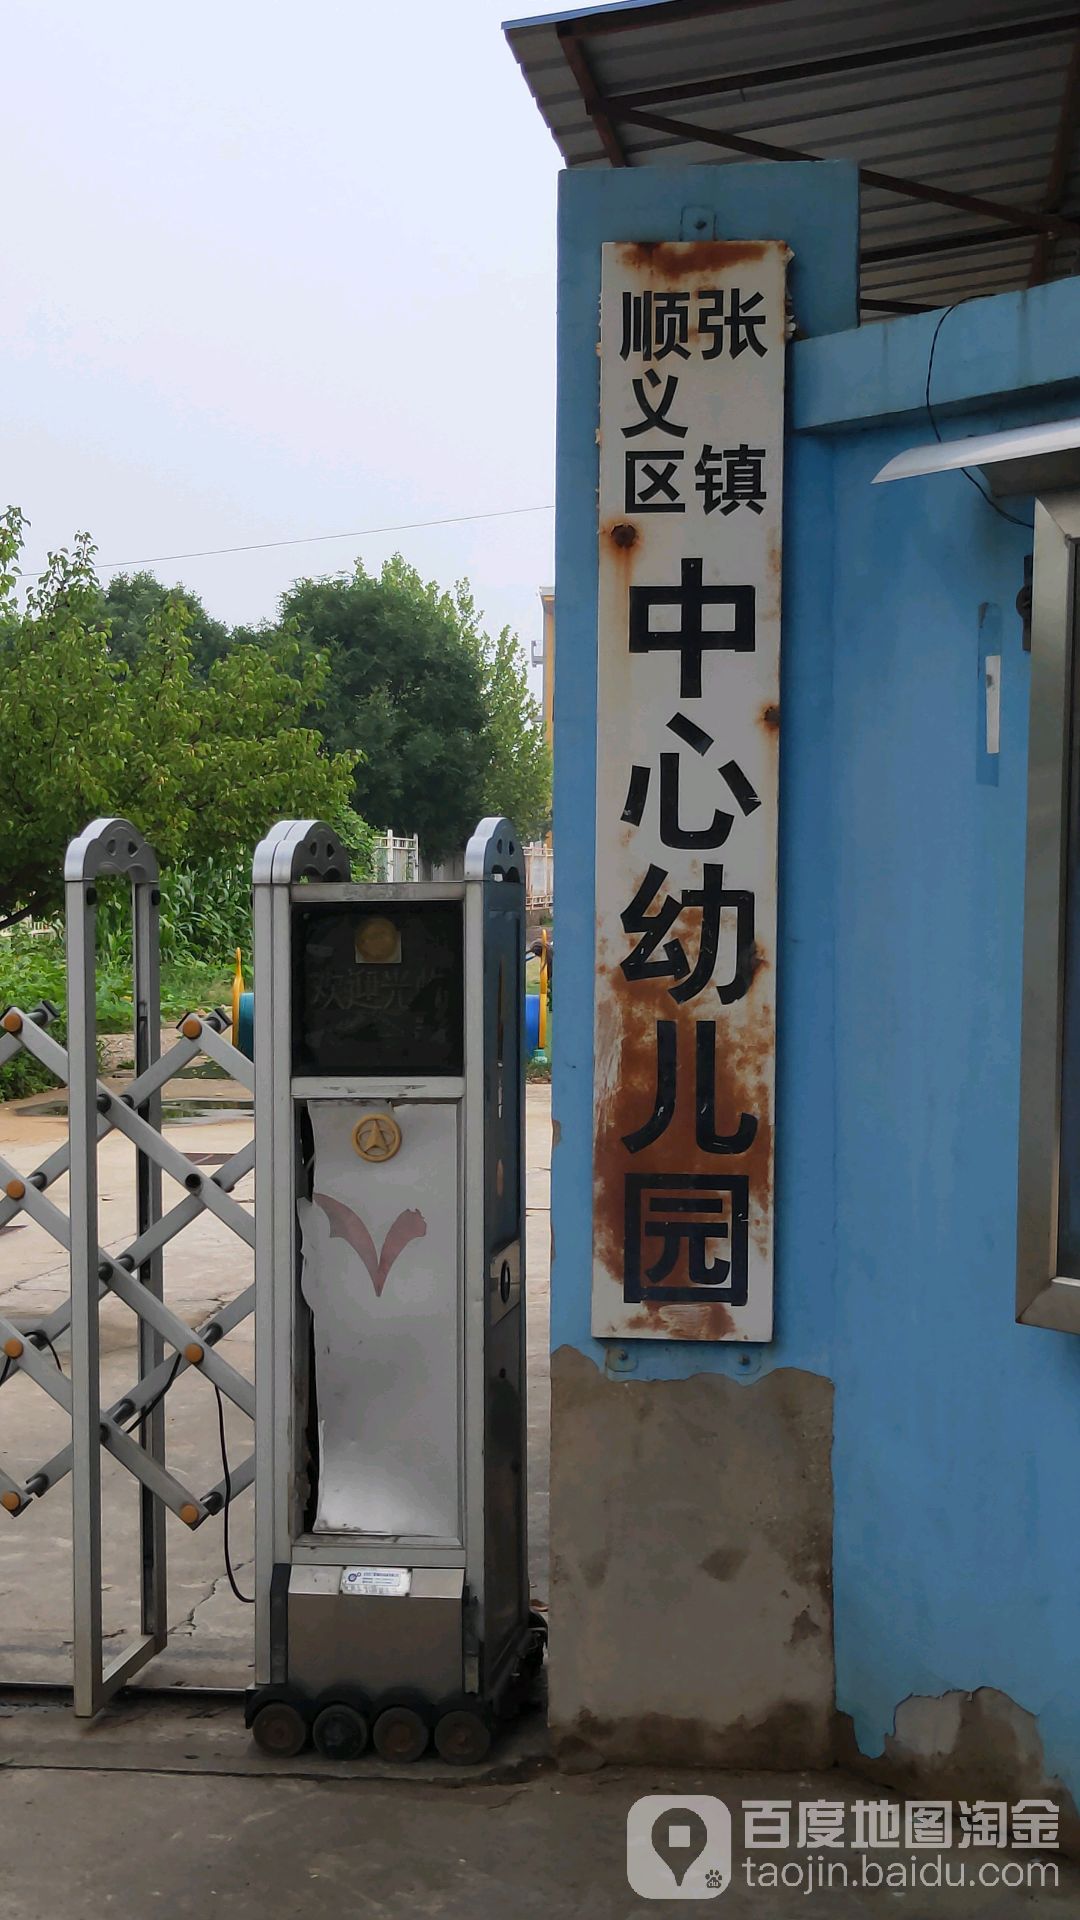 张镇顺义区中心幼儿园